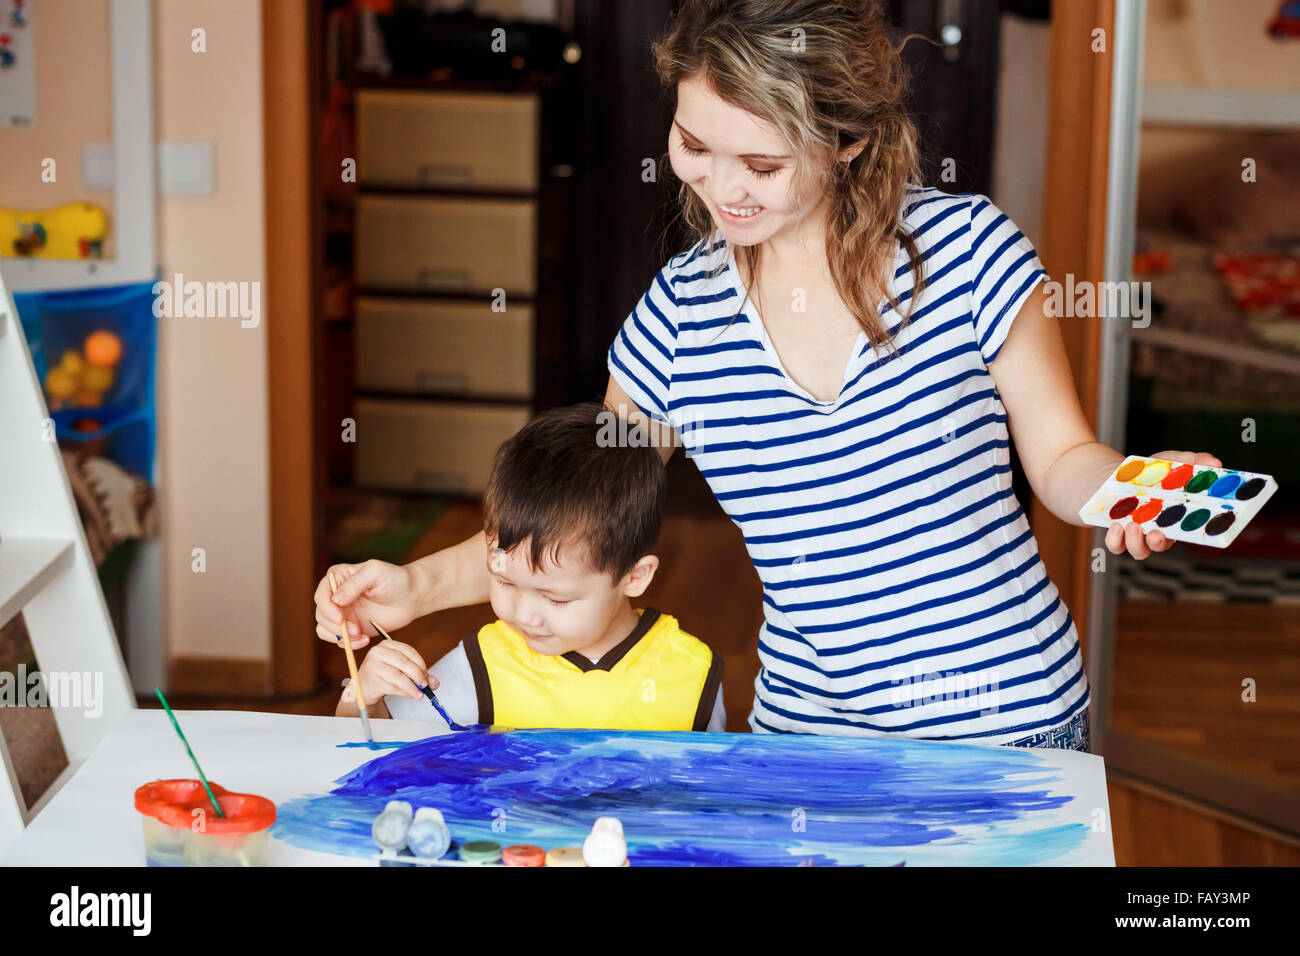 Fröhliche Kindheit, kleiner Junge spielt mit seiner Mutter, zeichnet, malt auf den Handflächen. Unterricht für Kinder zeichnen, Entwicklung von kreativen Fähigkeiten. Zeichnen Sie ein Meer. Stockfoto